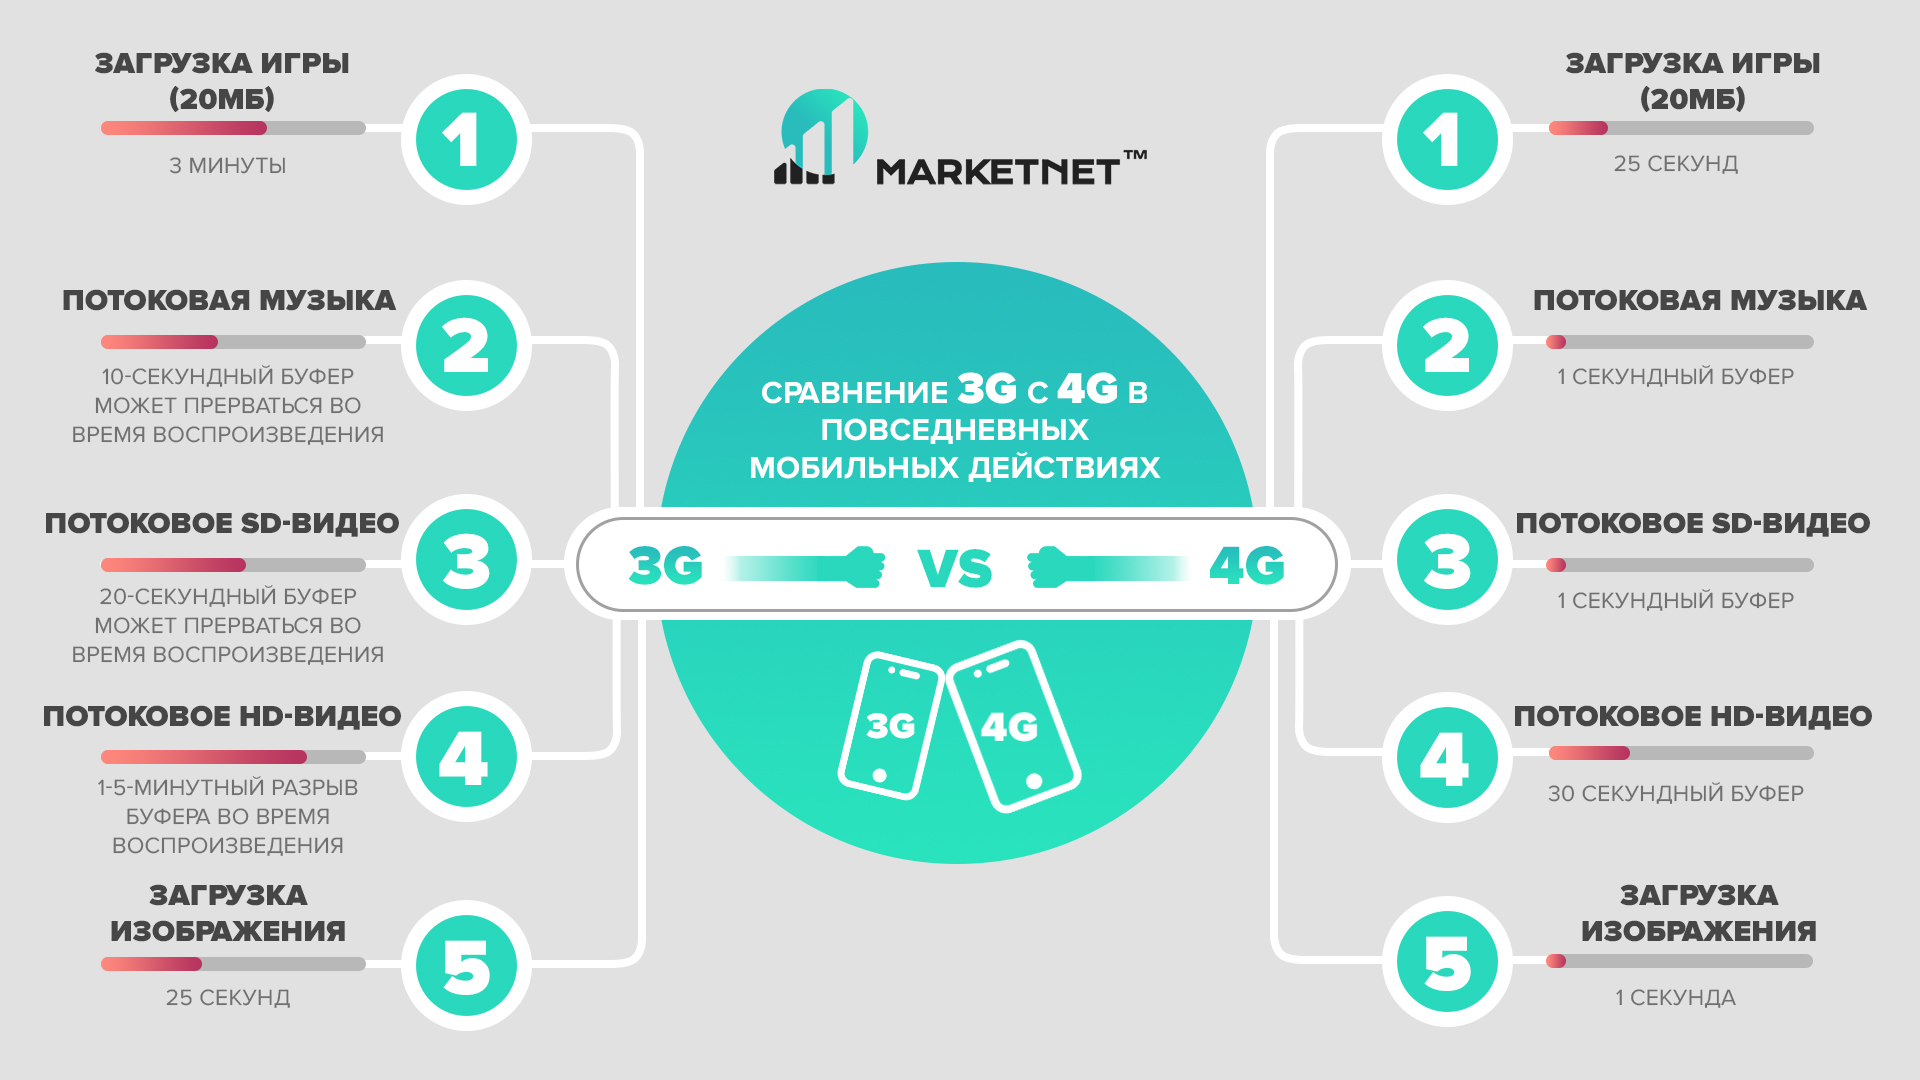 Сравнение 3G и 4G на Marketnet. Разница в скорости загрузки 3G vs 4G: загрузка игры, потоковая музыка, потоковое SD-видео, потоковое HD-видео, загрузка изображений